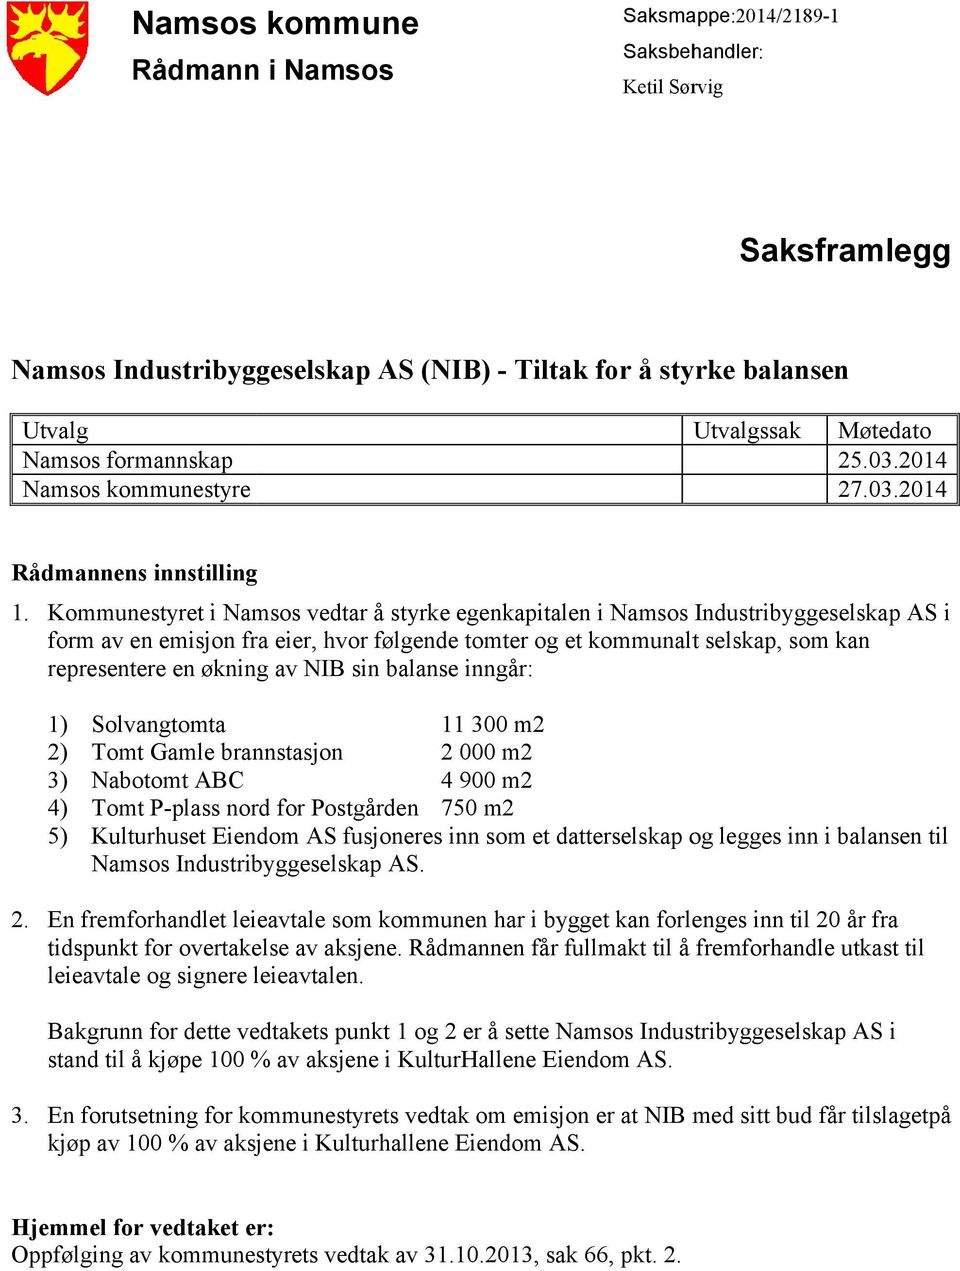 Kommunestyret i Namsos vedtar å styrke egenkapitalen i Namsos Industribyggeselskap AS i form av en emisjon fra eier, hvor følgende tomter og et kommunalt selskap, som kan representere en økning av